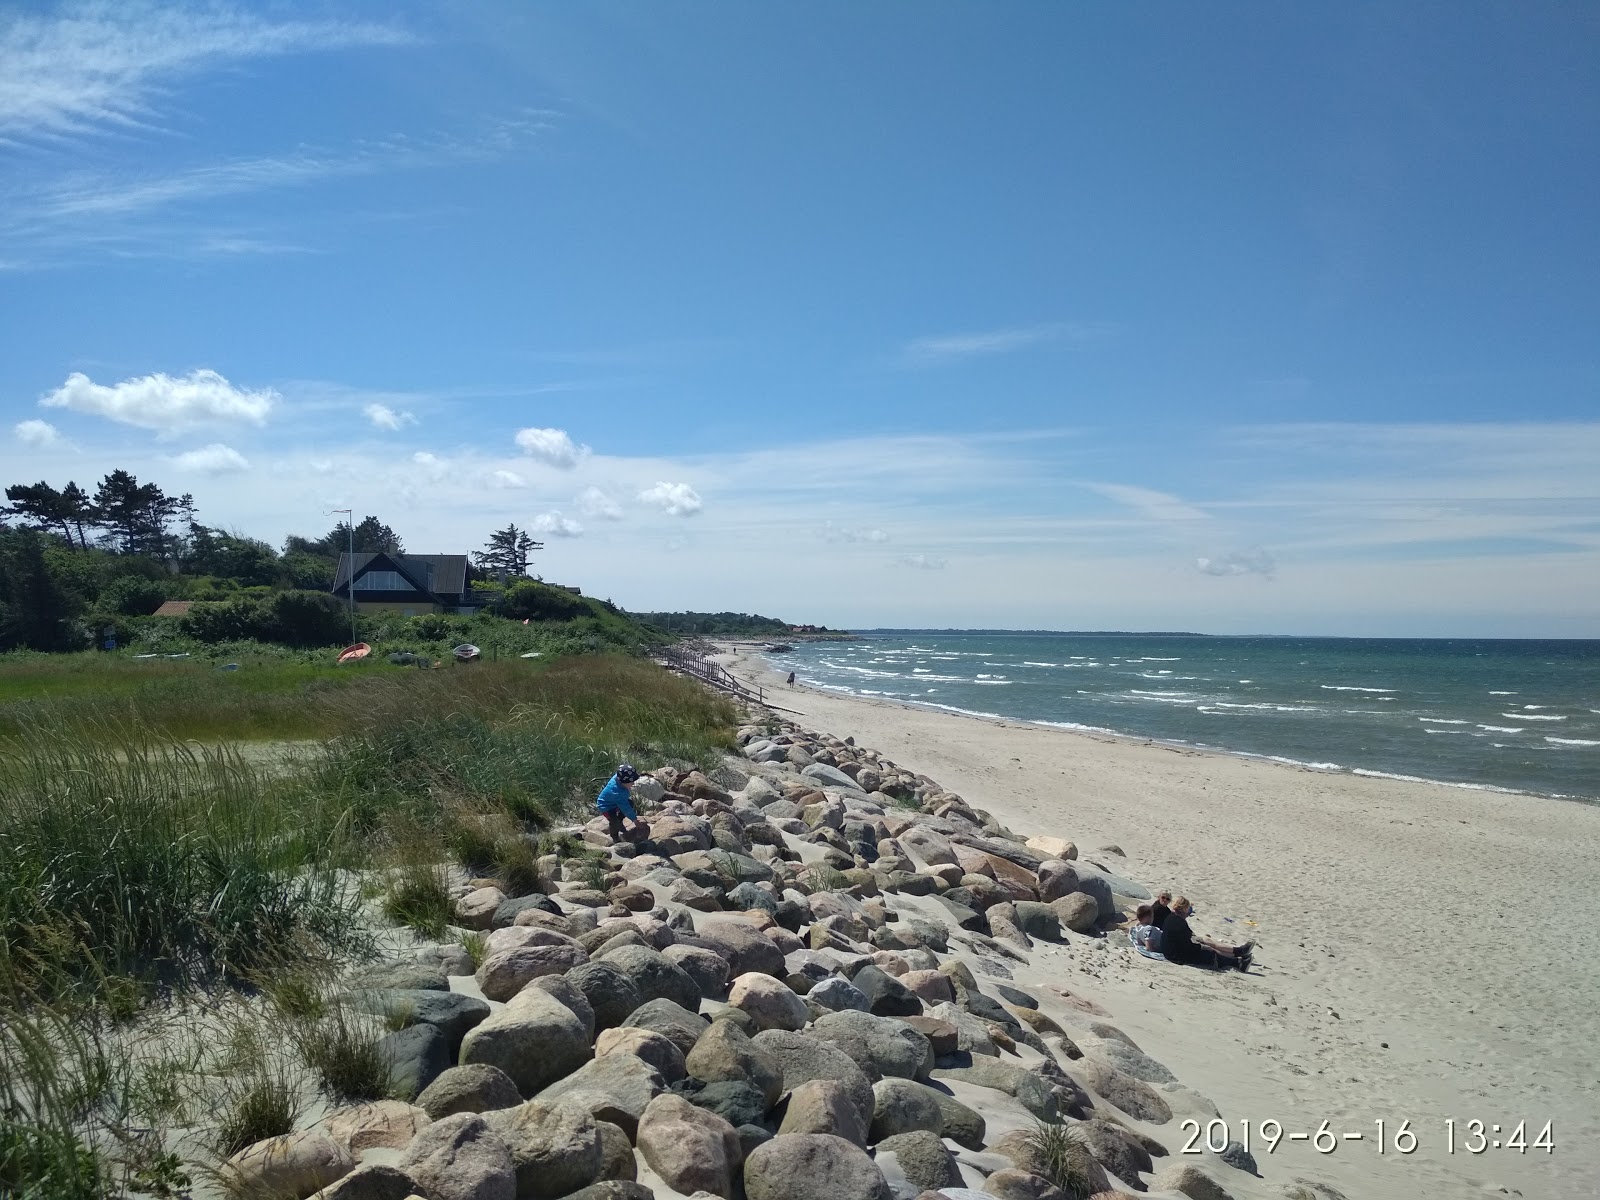 Galgebjerg Beach'in fotoğrafı çok temiz temizlik seviyesi ile